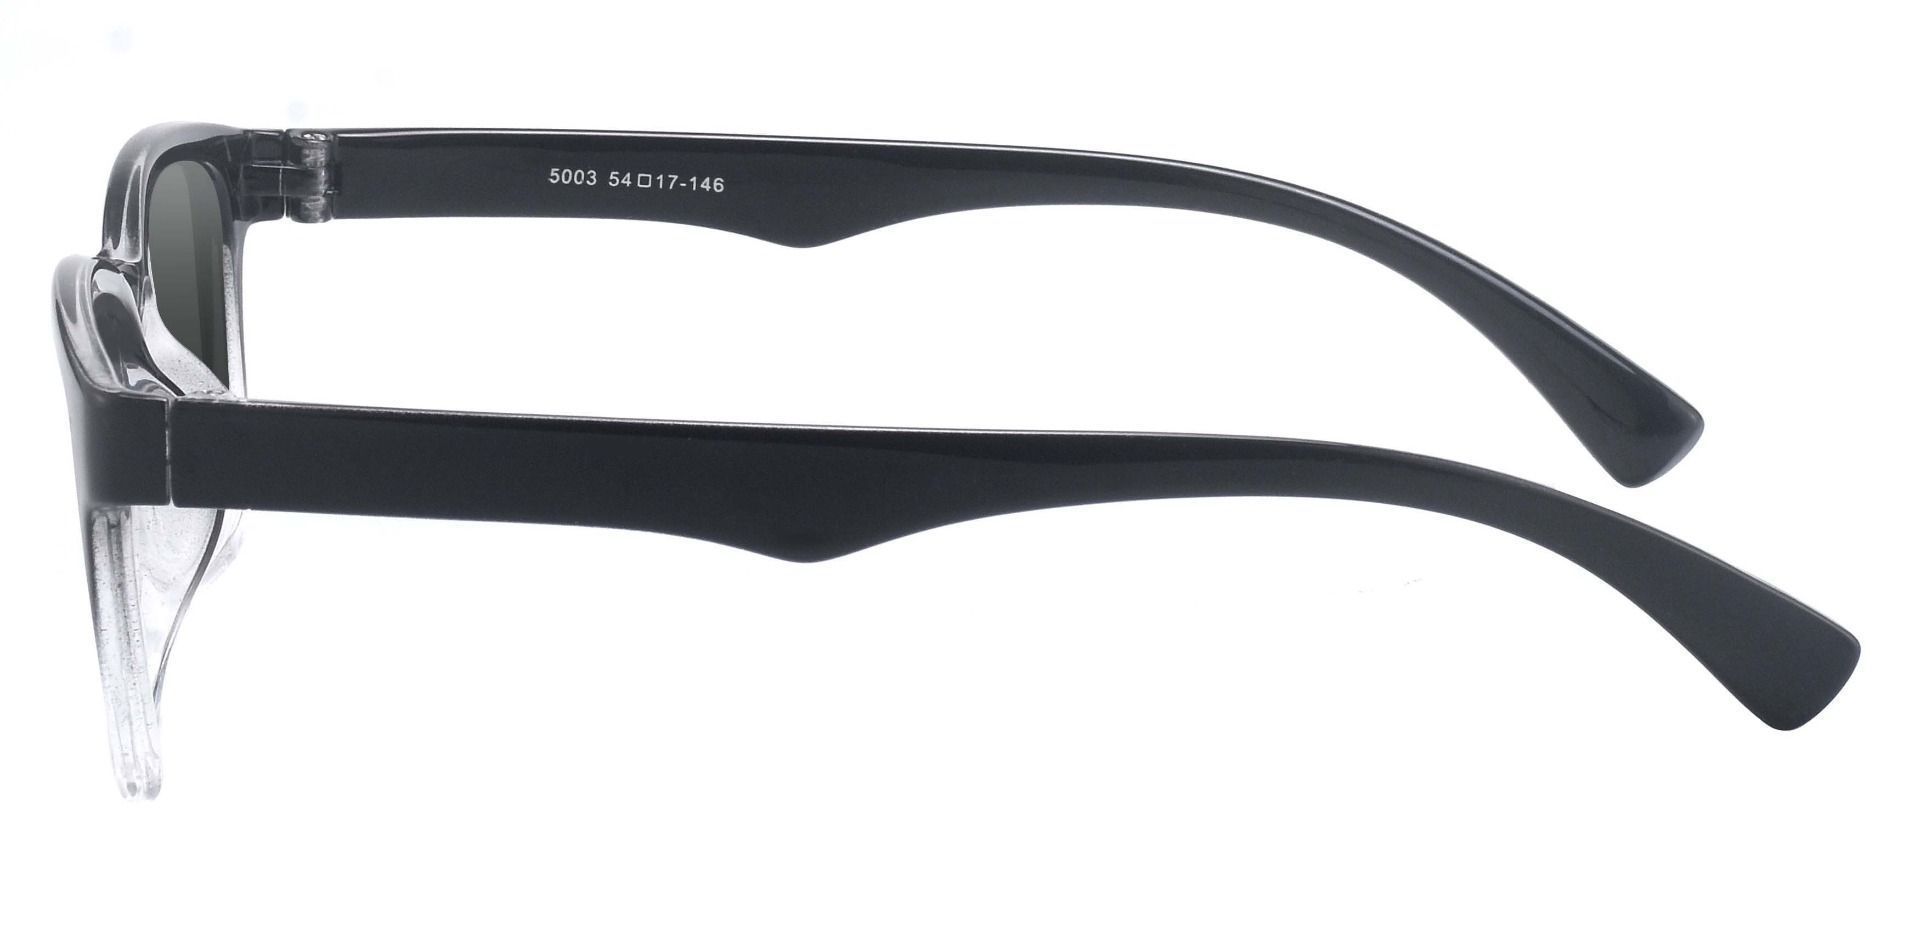 Hoover Rectangle Prescription Sunglasses - Black Frame With Gray Lenses